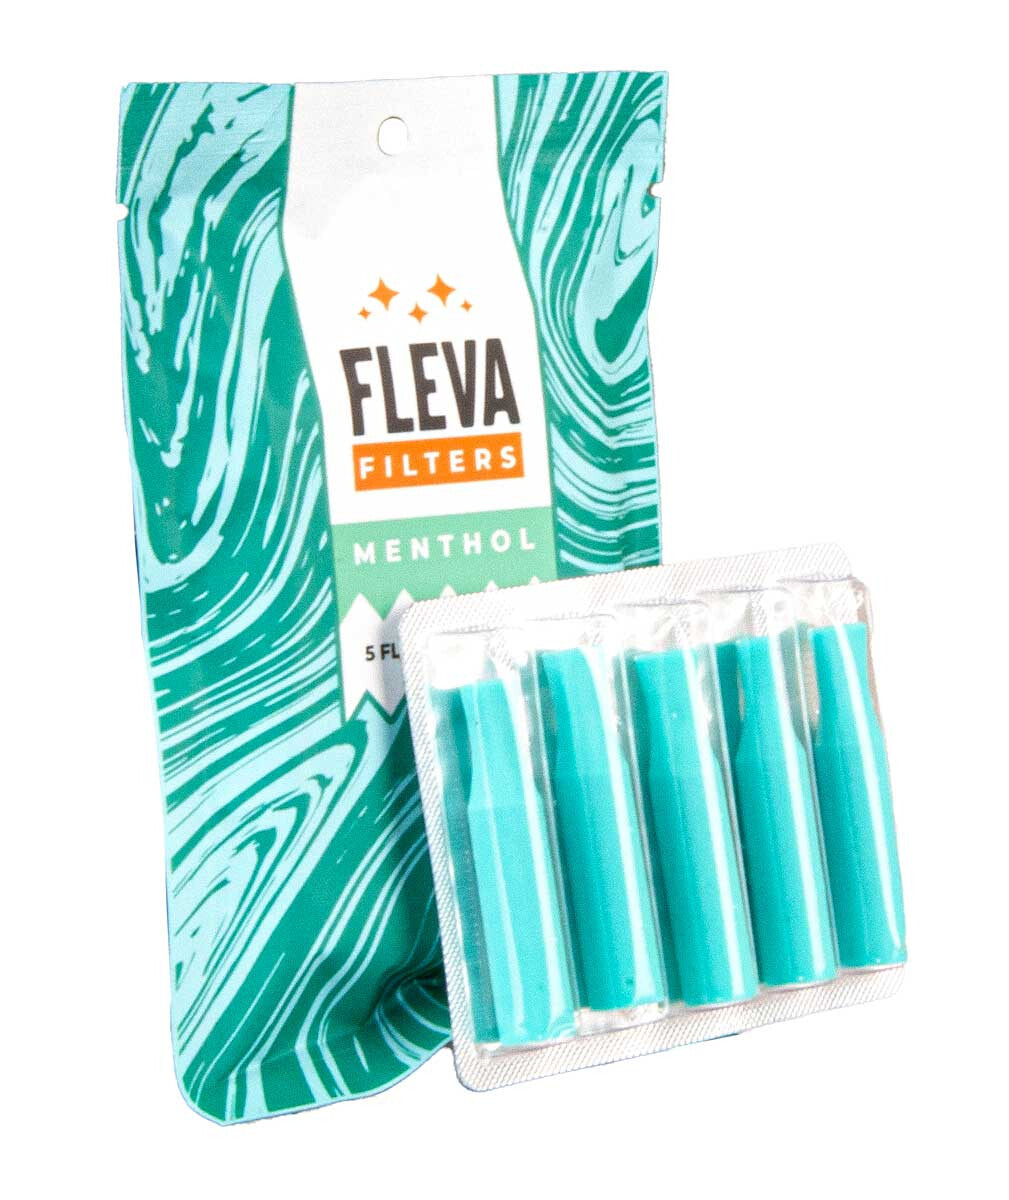 Fleva Filters 5 Pcs